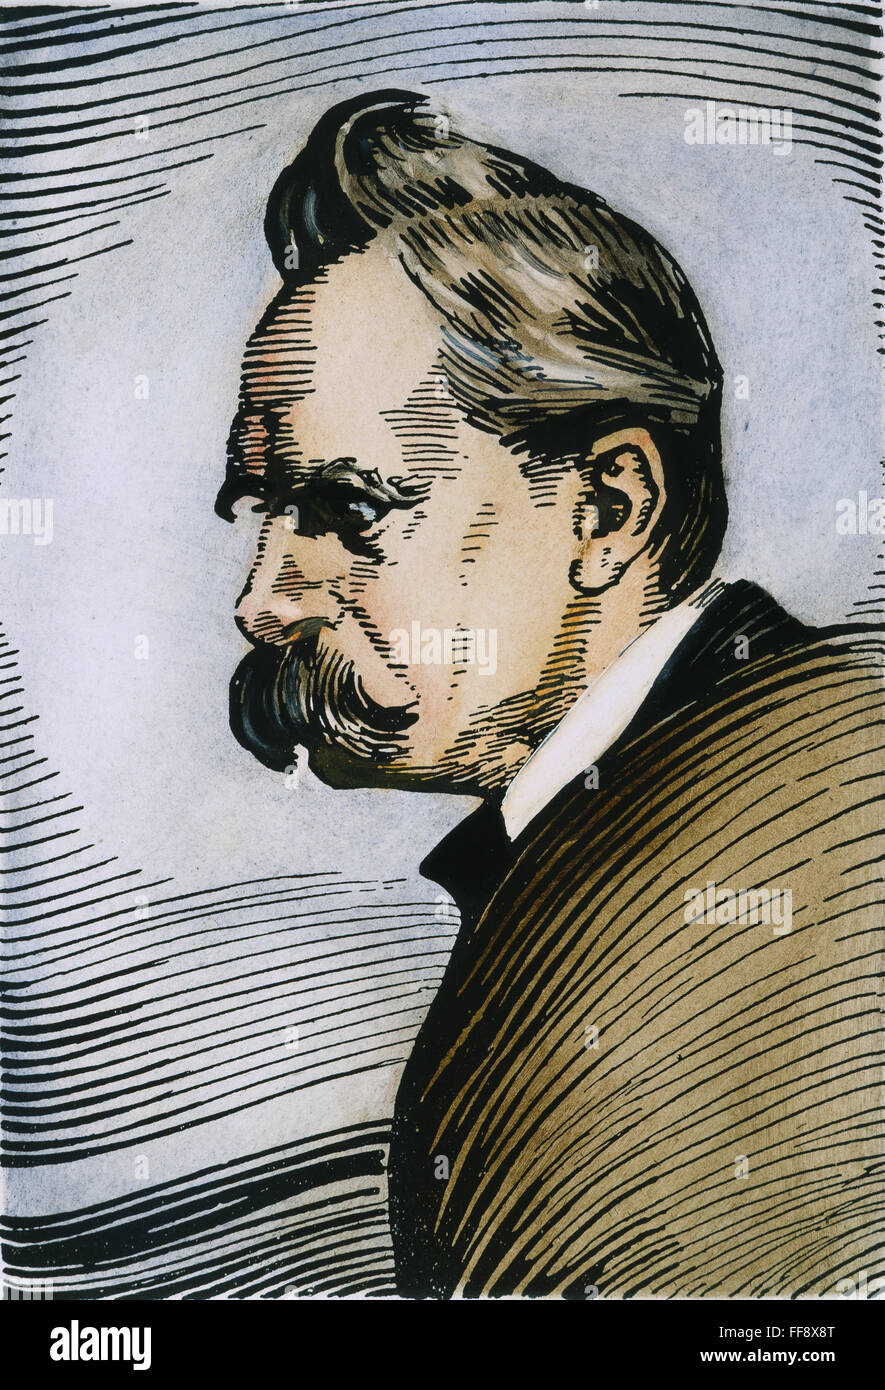 FRIEDRICH W. NIETZSCHE /n(1844-1900). German philosopher and poet. Pen portrait, German, c1925. Stock Photo